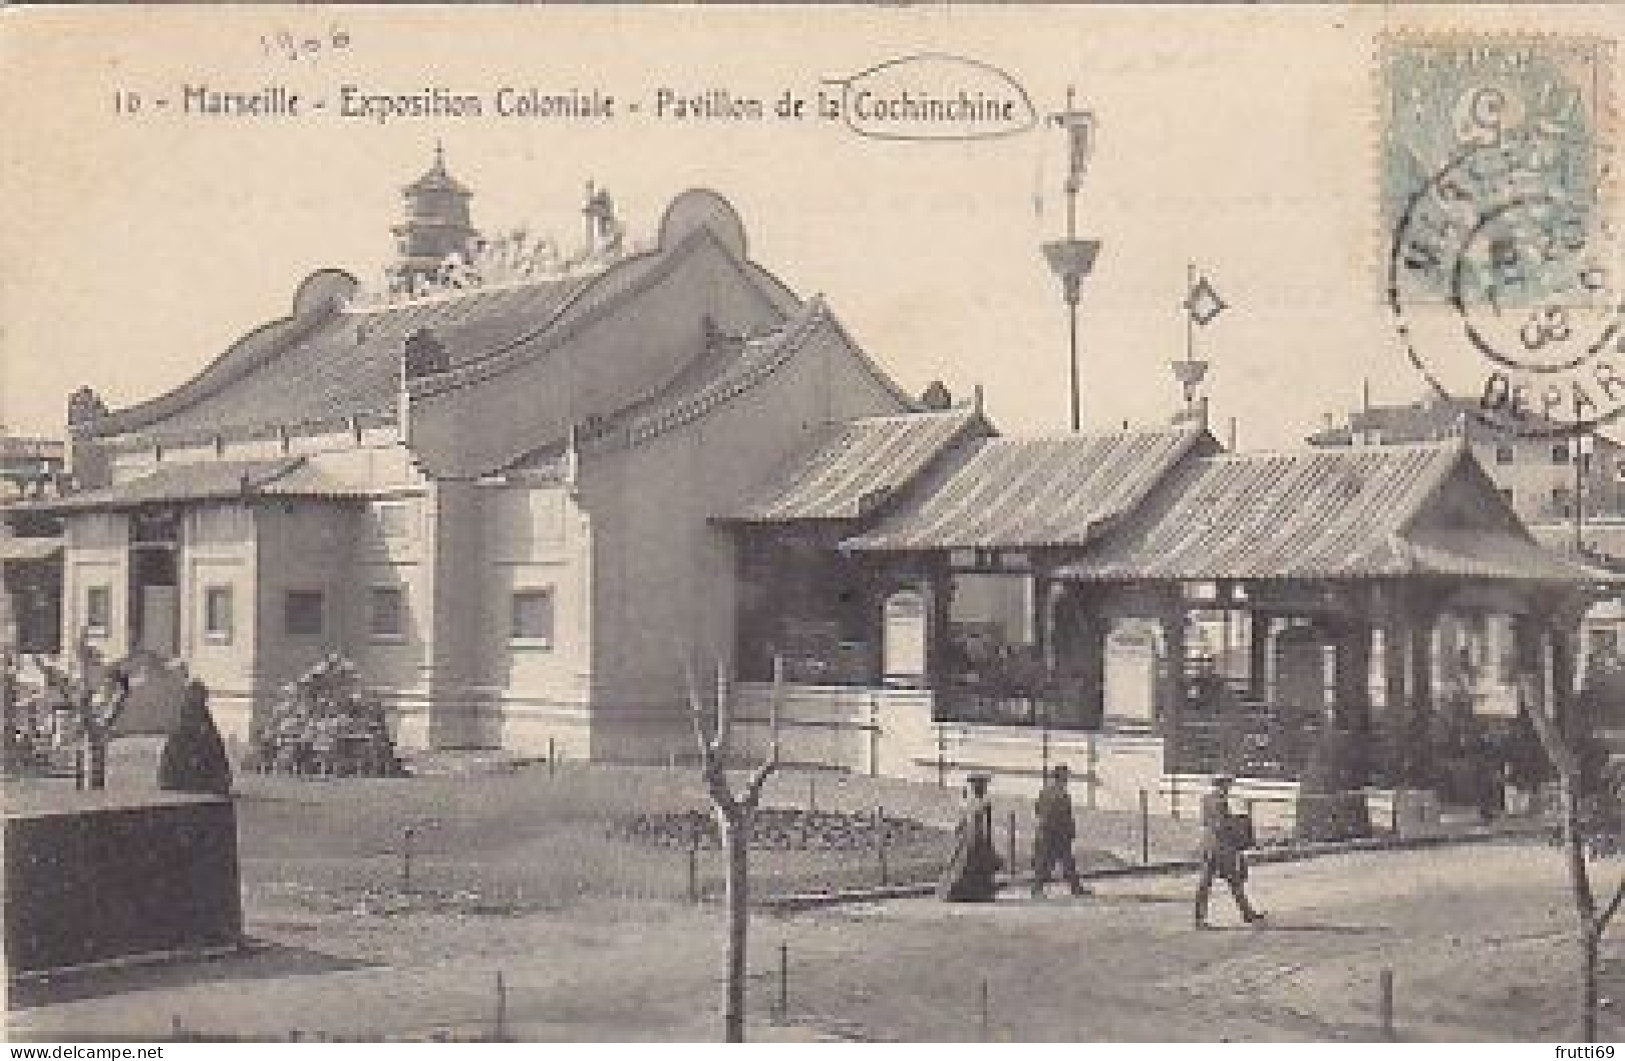 AK 216699 FRANCE - Marseille - Expoition Coloniale - Pavilion De Ls Cochinchine - Colonial Exhibitions 1906 - 1922